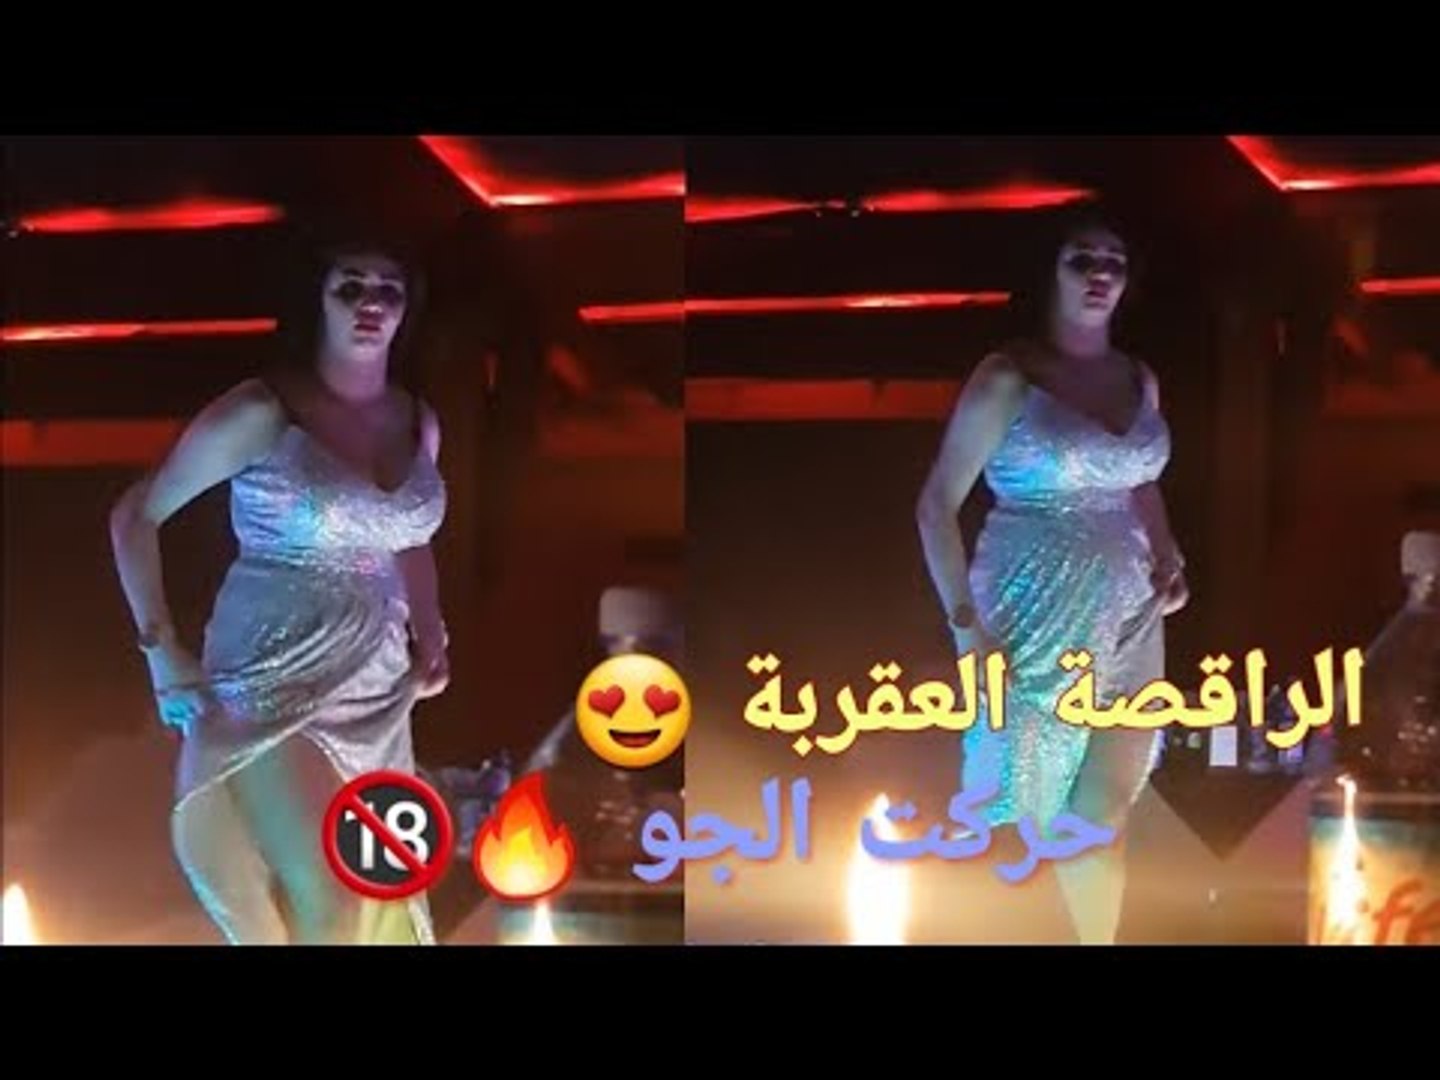 حفلات عراقية خاصة و رقص الزلزال العقربة على المعزوفة والردح الفووول 2019 -  video Dailymotion